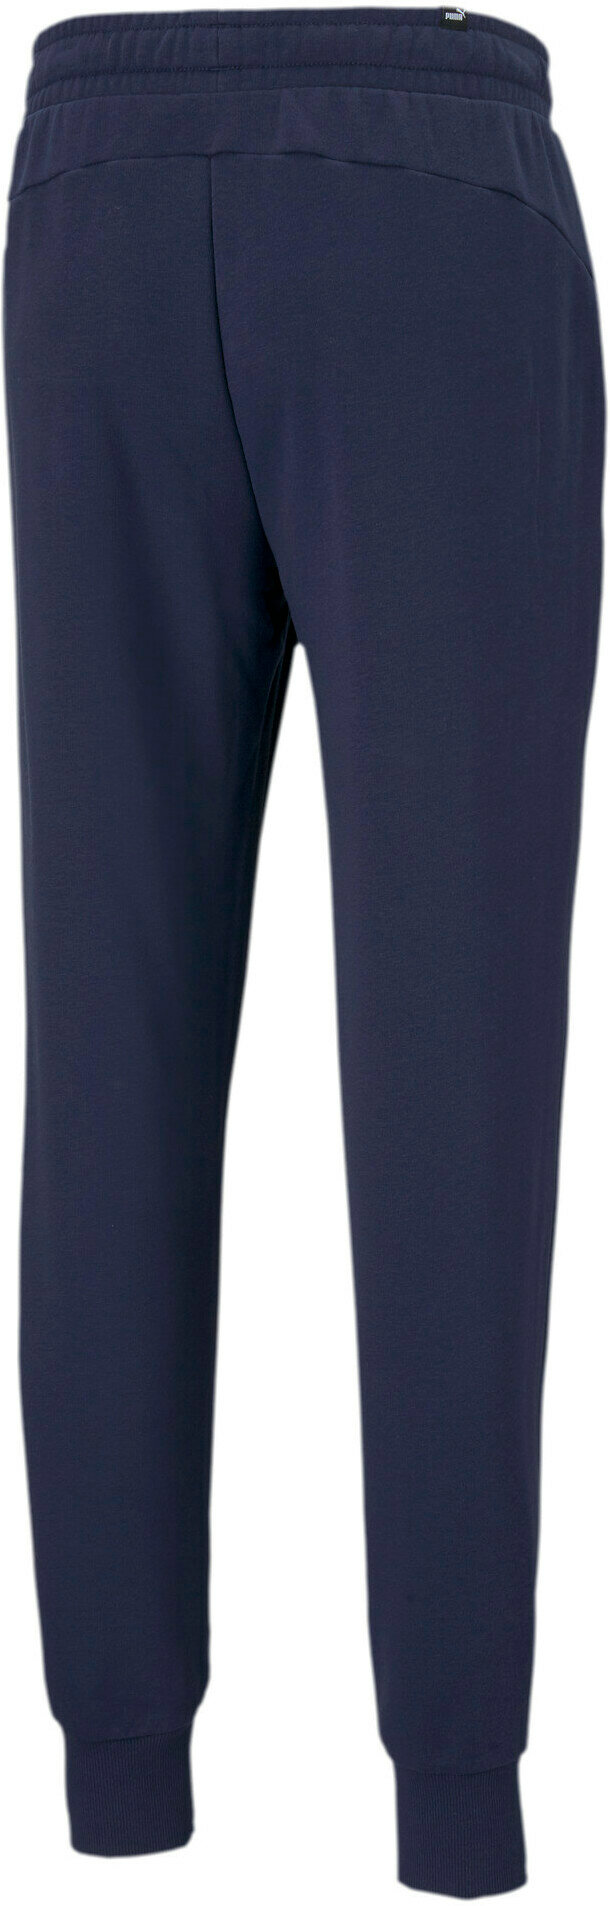 Брюки спортивные PUMA Essentials Logo Men's Sweatpants